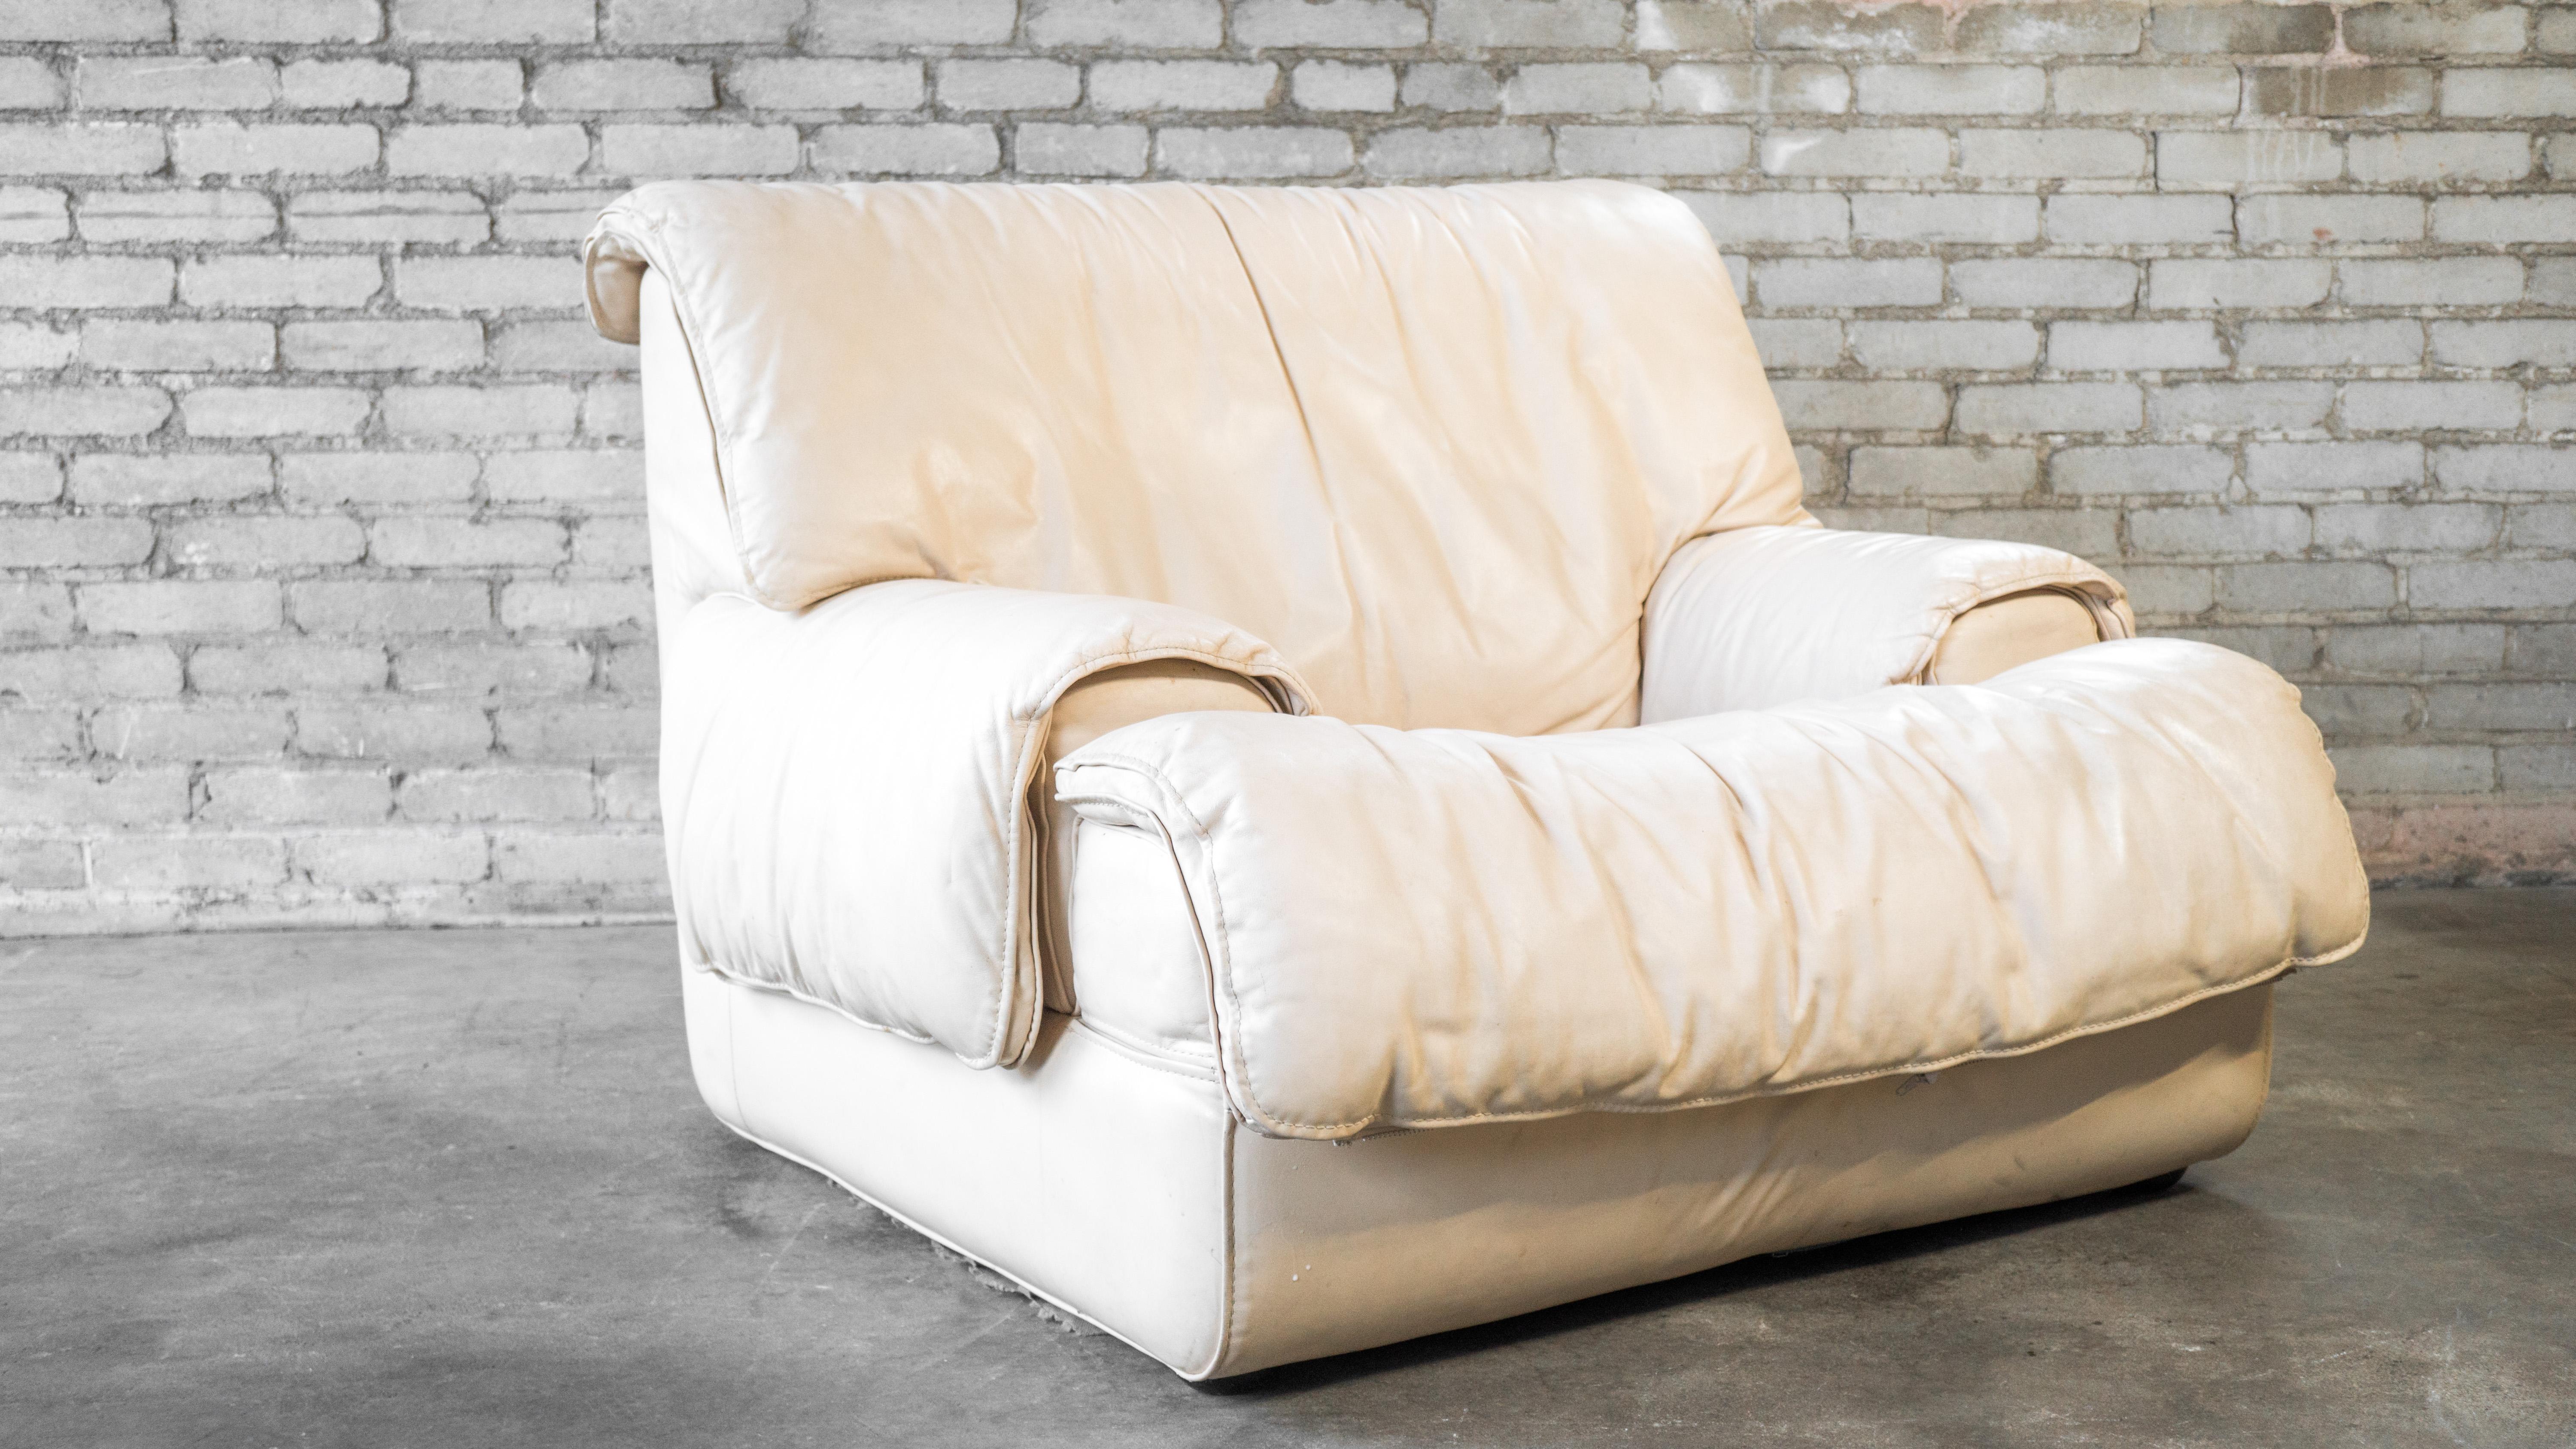 Roche Bobois Sessel aus cremefarbenem Leder, ca. 1980er Jahre. Niedrige Bauweise mit dicker, weicher Polsterung. Lederfalten über den Armen und der Rückenlehne sorgen für eine entspannte Atmosphäre. Die Sitze sind sehr niedrig und fesselnd. Guter